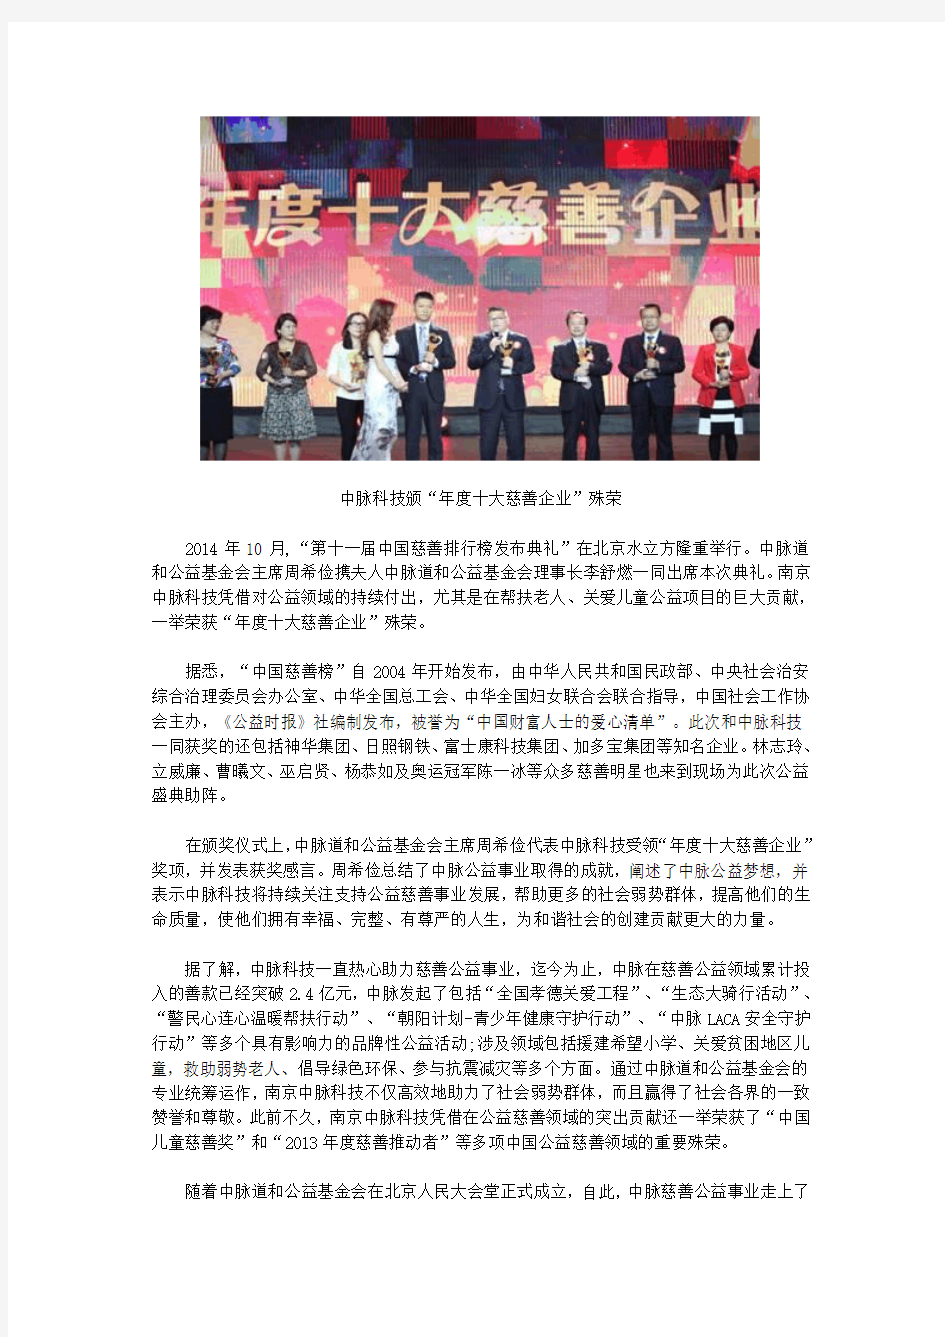 中脉科技荣膺“第十一届中国慈善排行榜年度十大慈善企业”